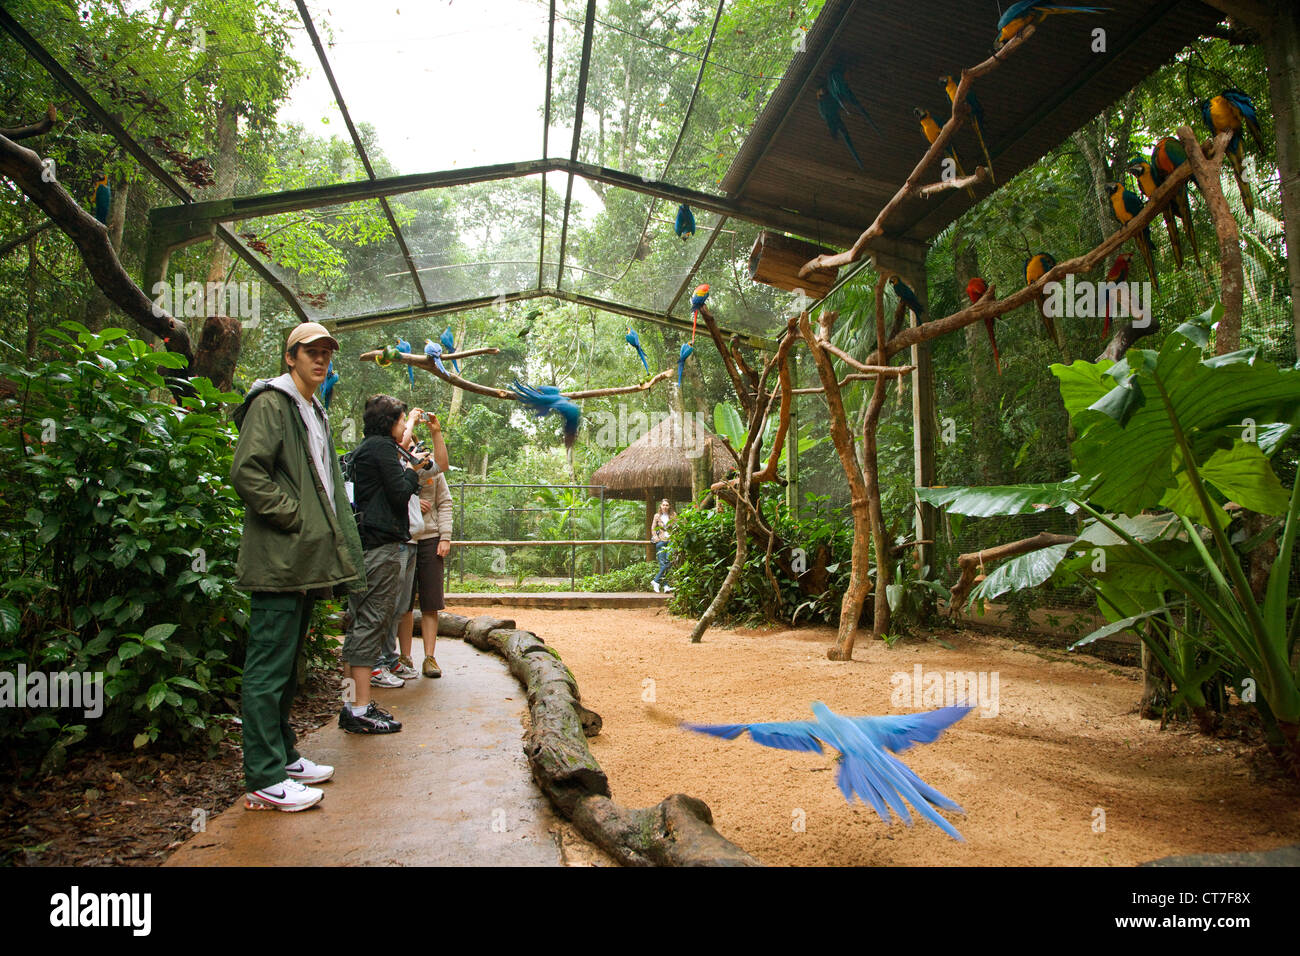 Walk through Parrot aviary in Parque das Aves or Bird Park Stock Photo